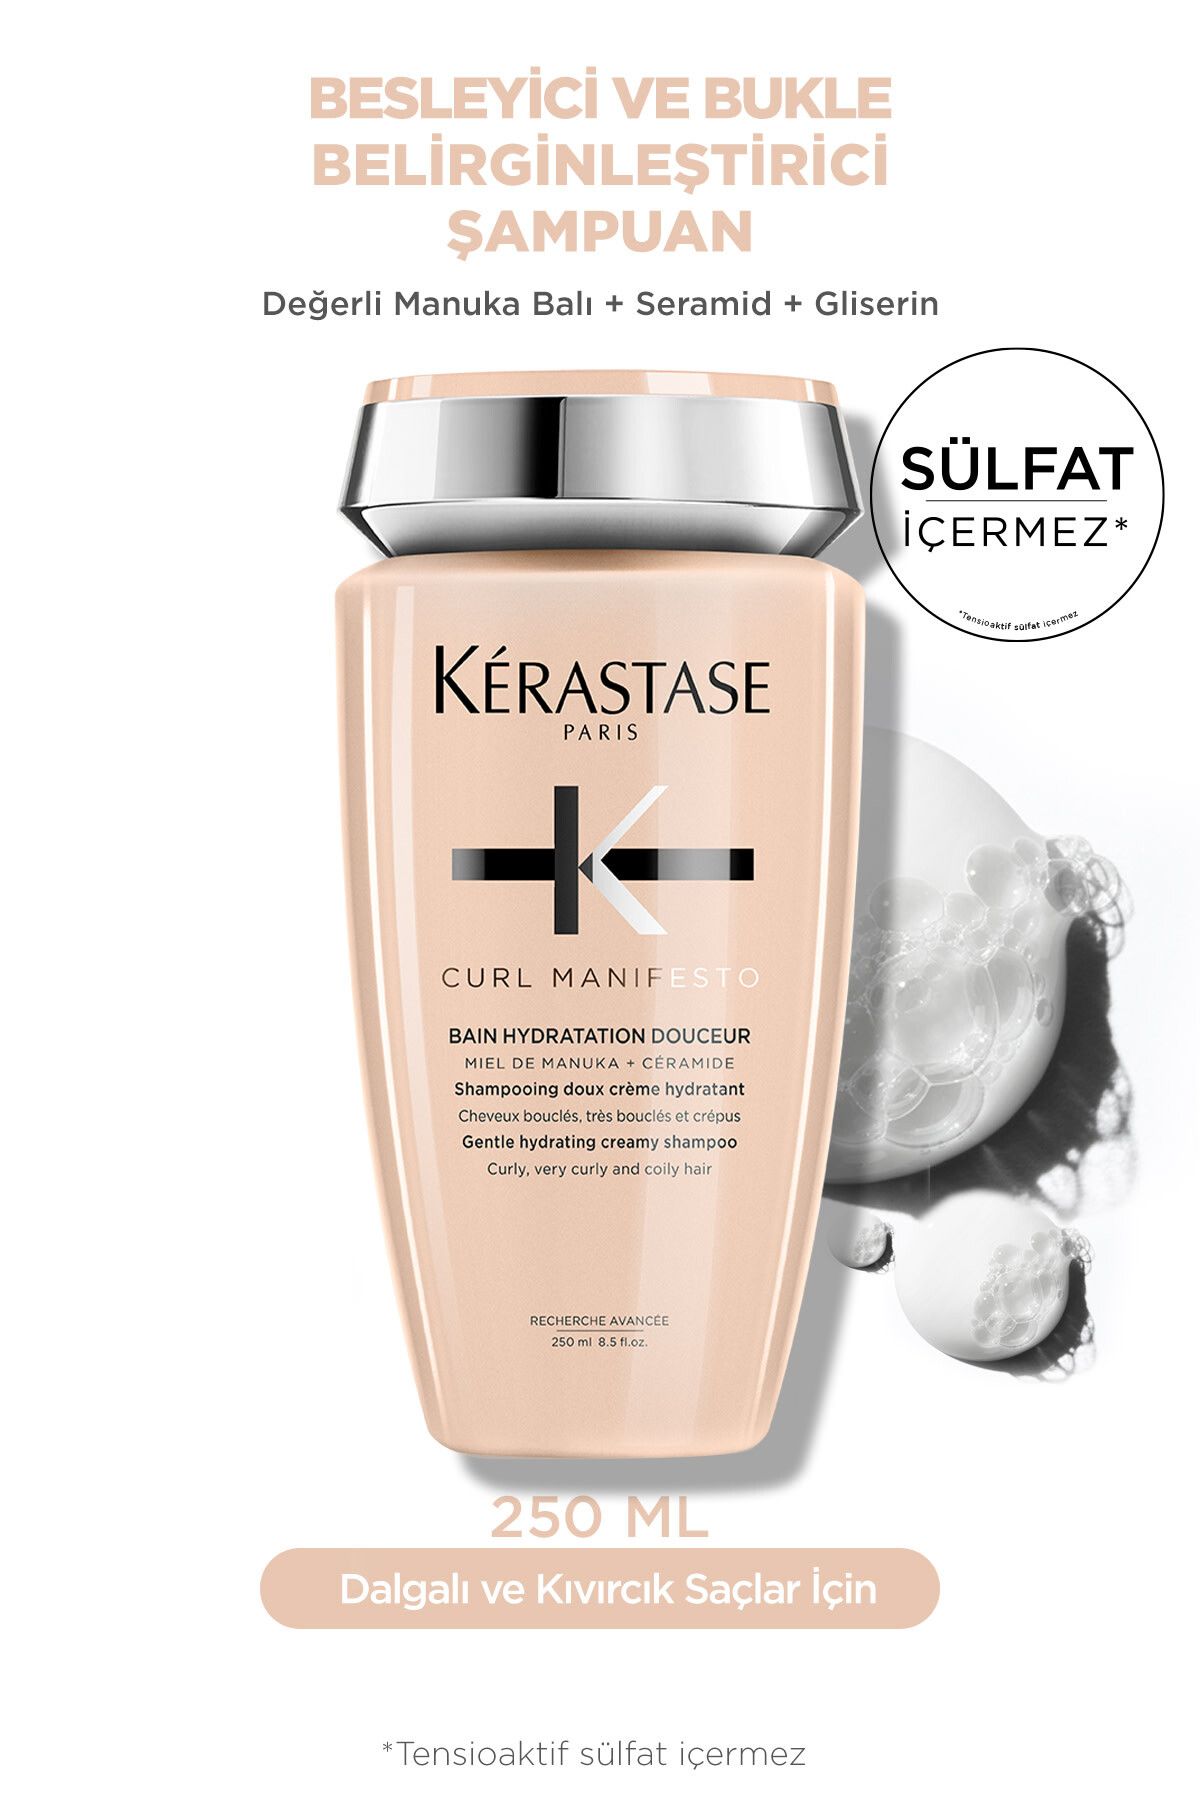 Kerastase Curl Manifesto Bain Hydratation Douceur Kıvırcık Saçlar Için Besleyici Şampuan 250 ml